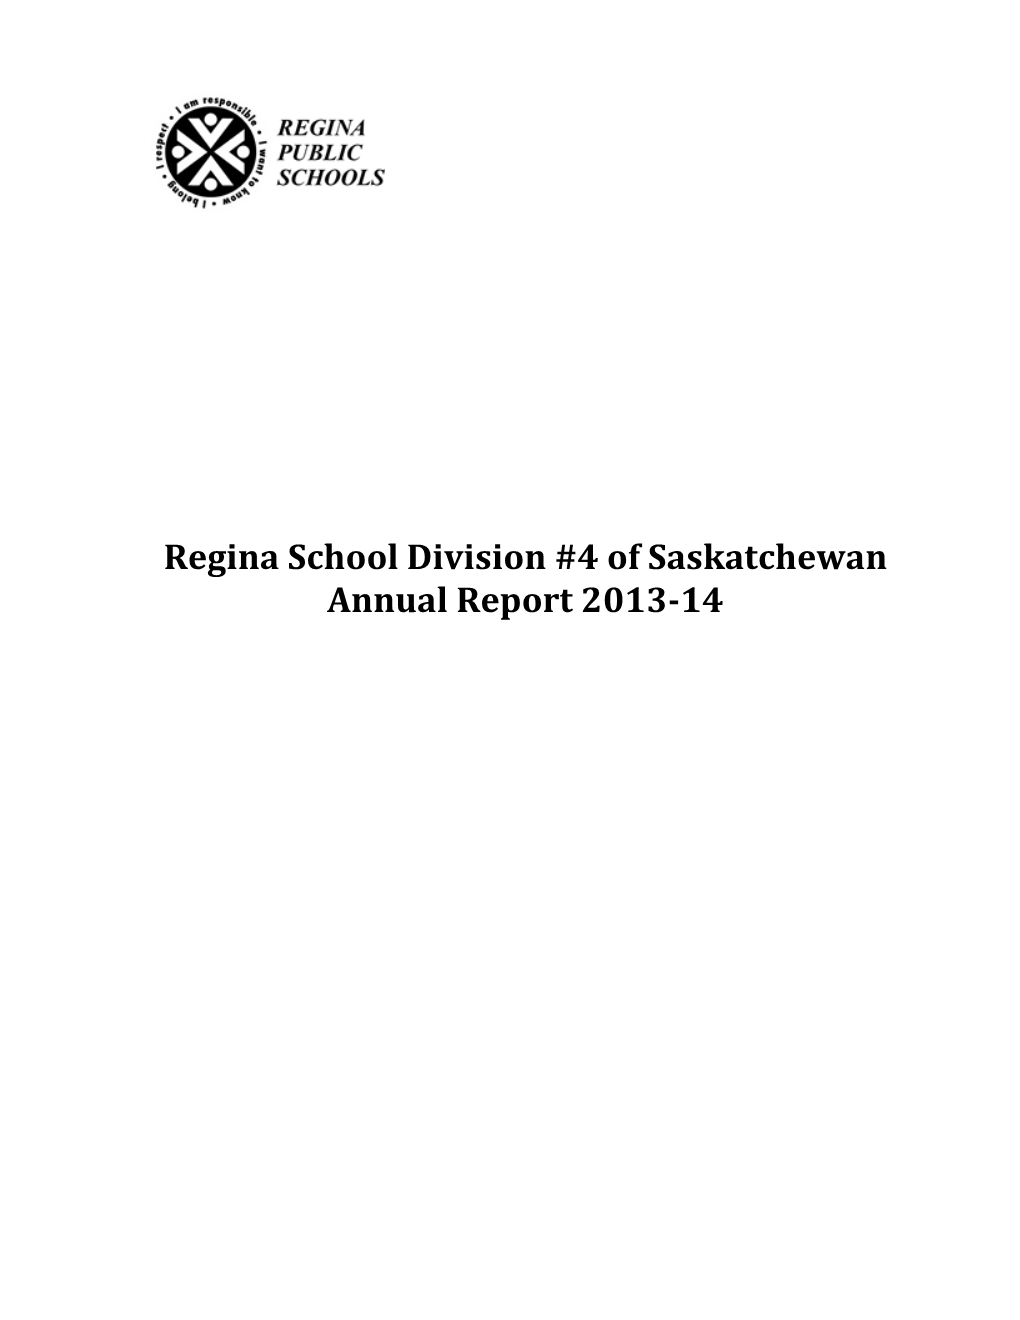 Regina School Division #4 of Saskatchewan Annual Report 2013-14